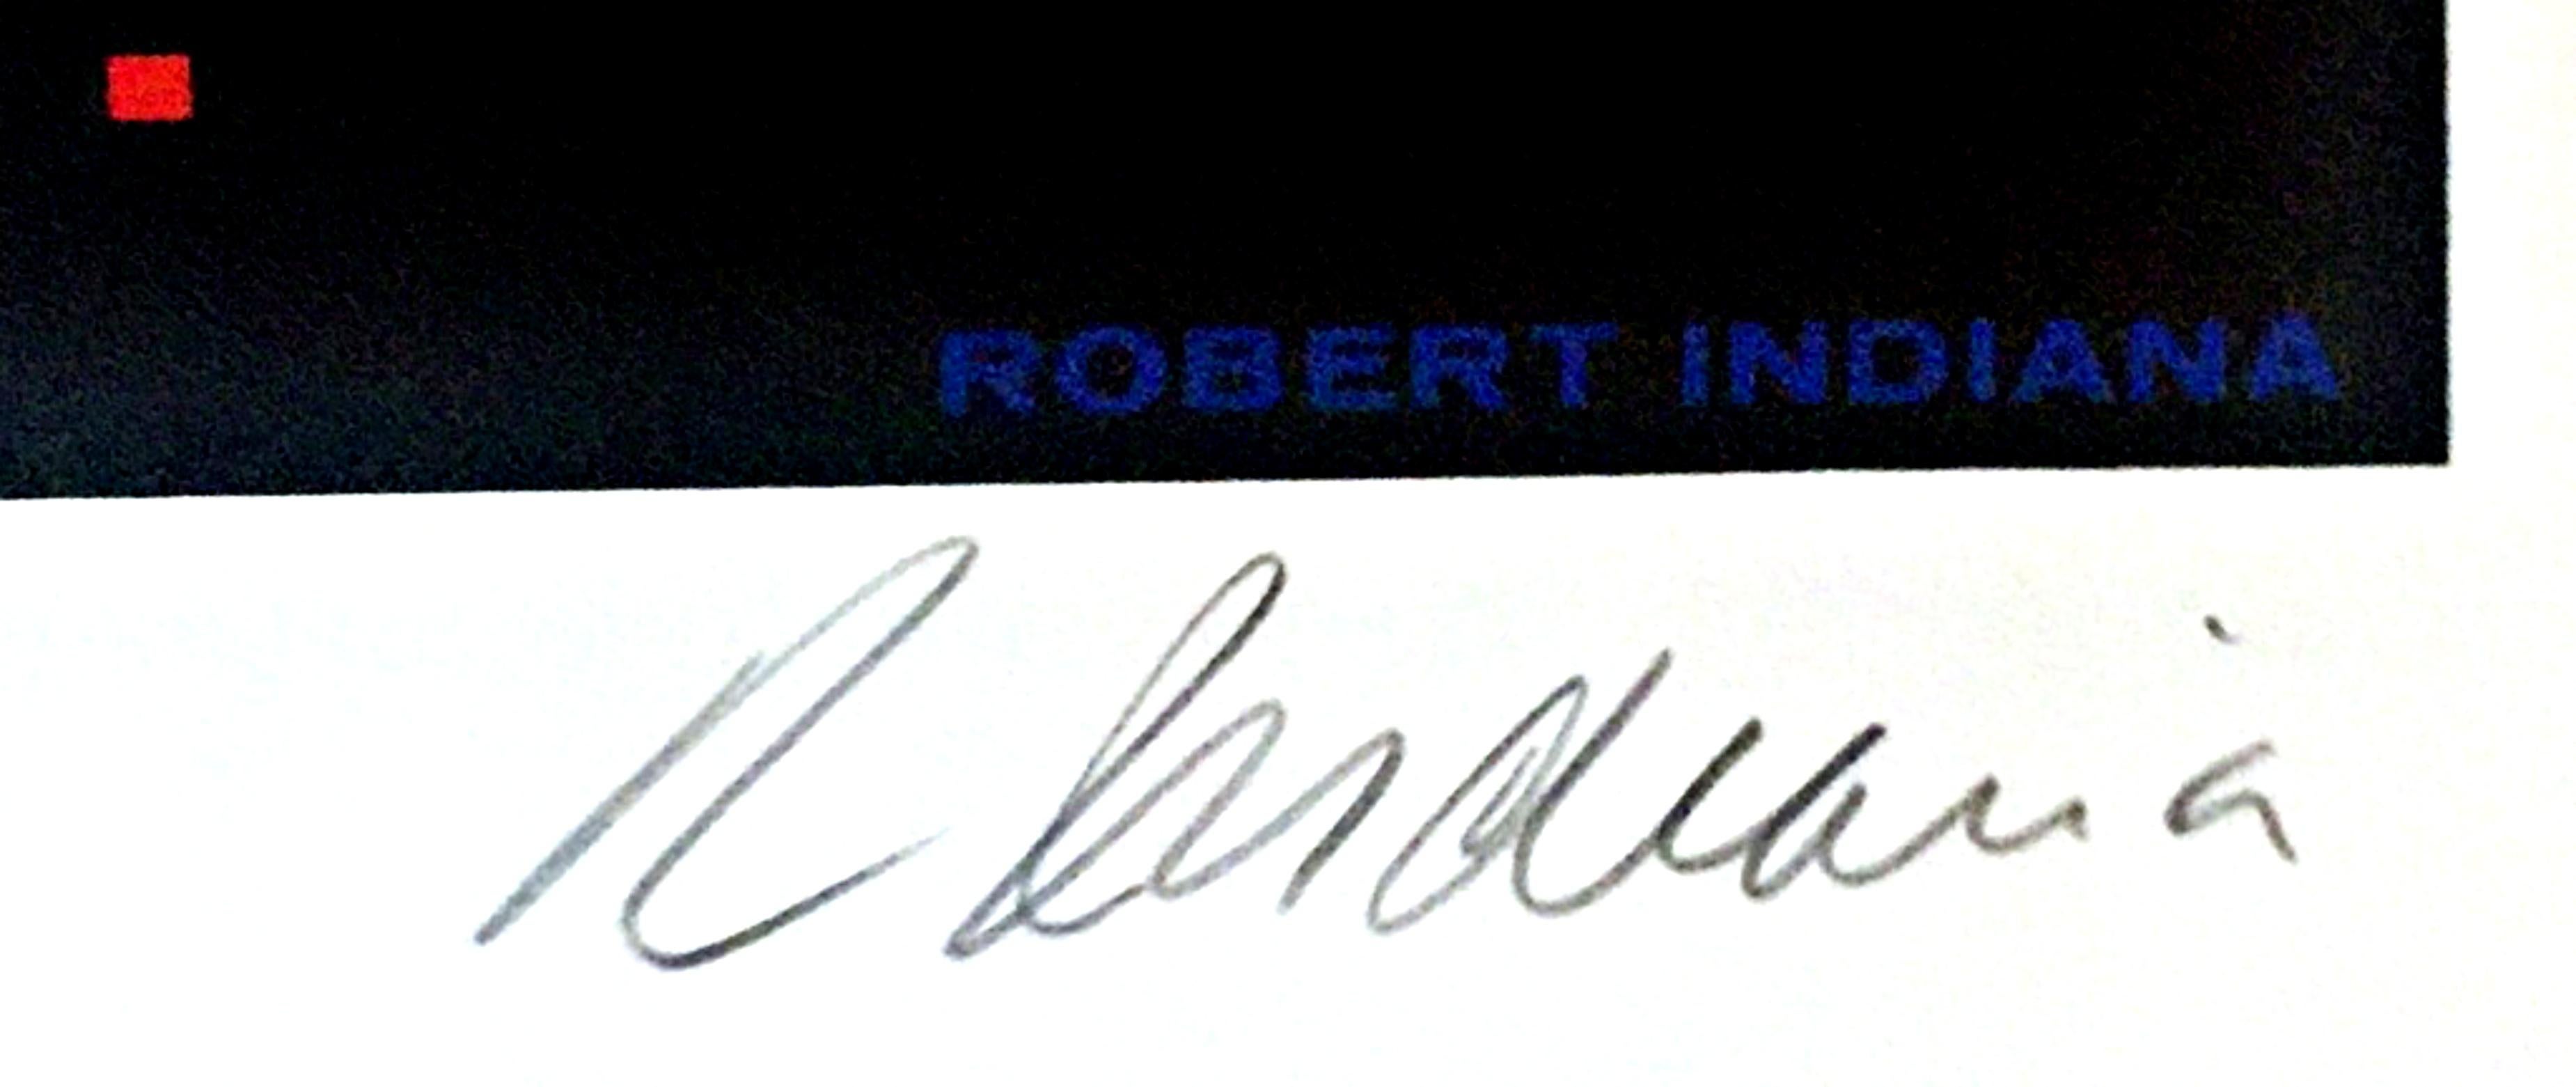 Lithographie Deluxe signée et numérotée pour le Hirshhorn Museum & Sculpture Garden  - Print de Robert Indiana